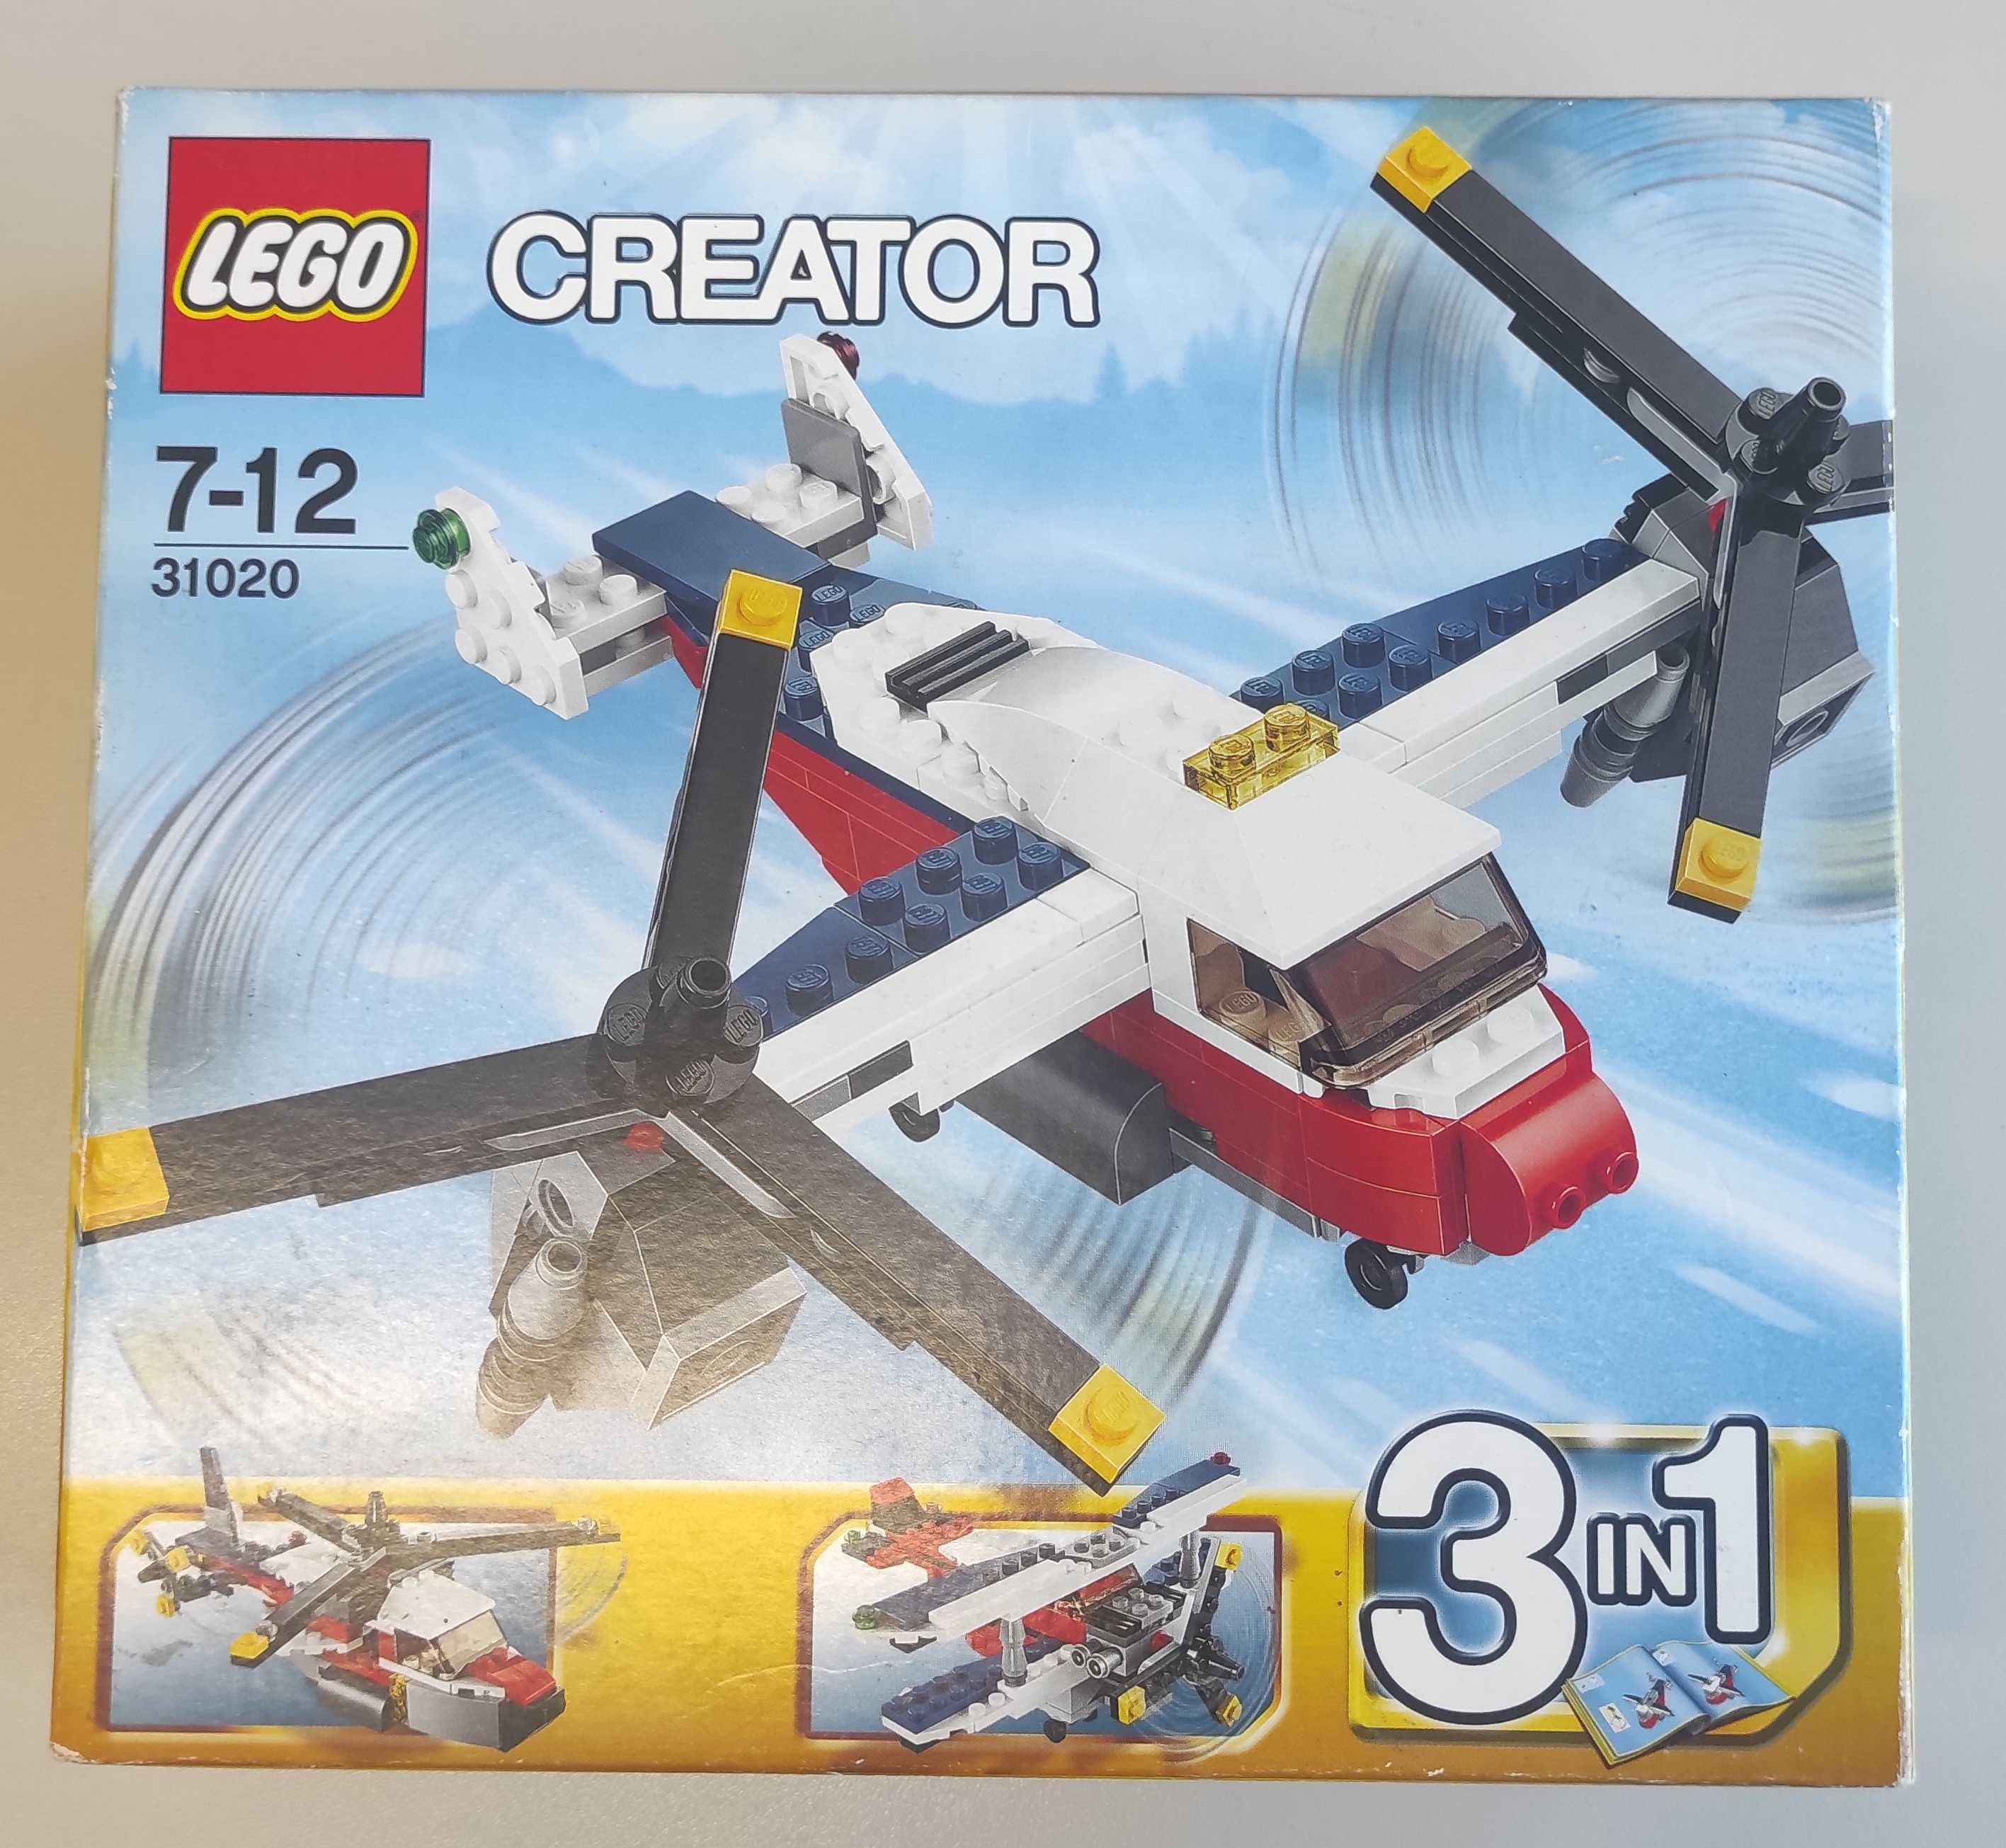 Lego Creator 31020 - Aventuras com Avião de Duas Hélices (NOVO)